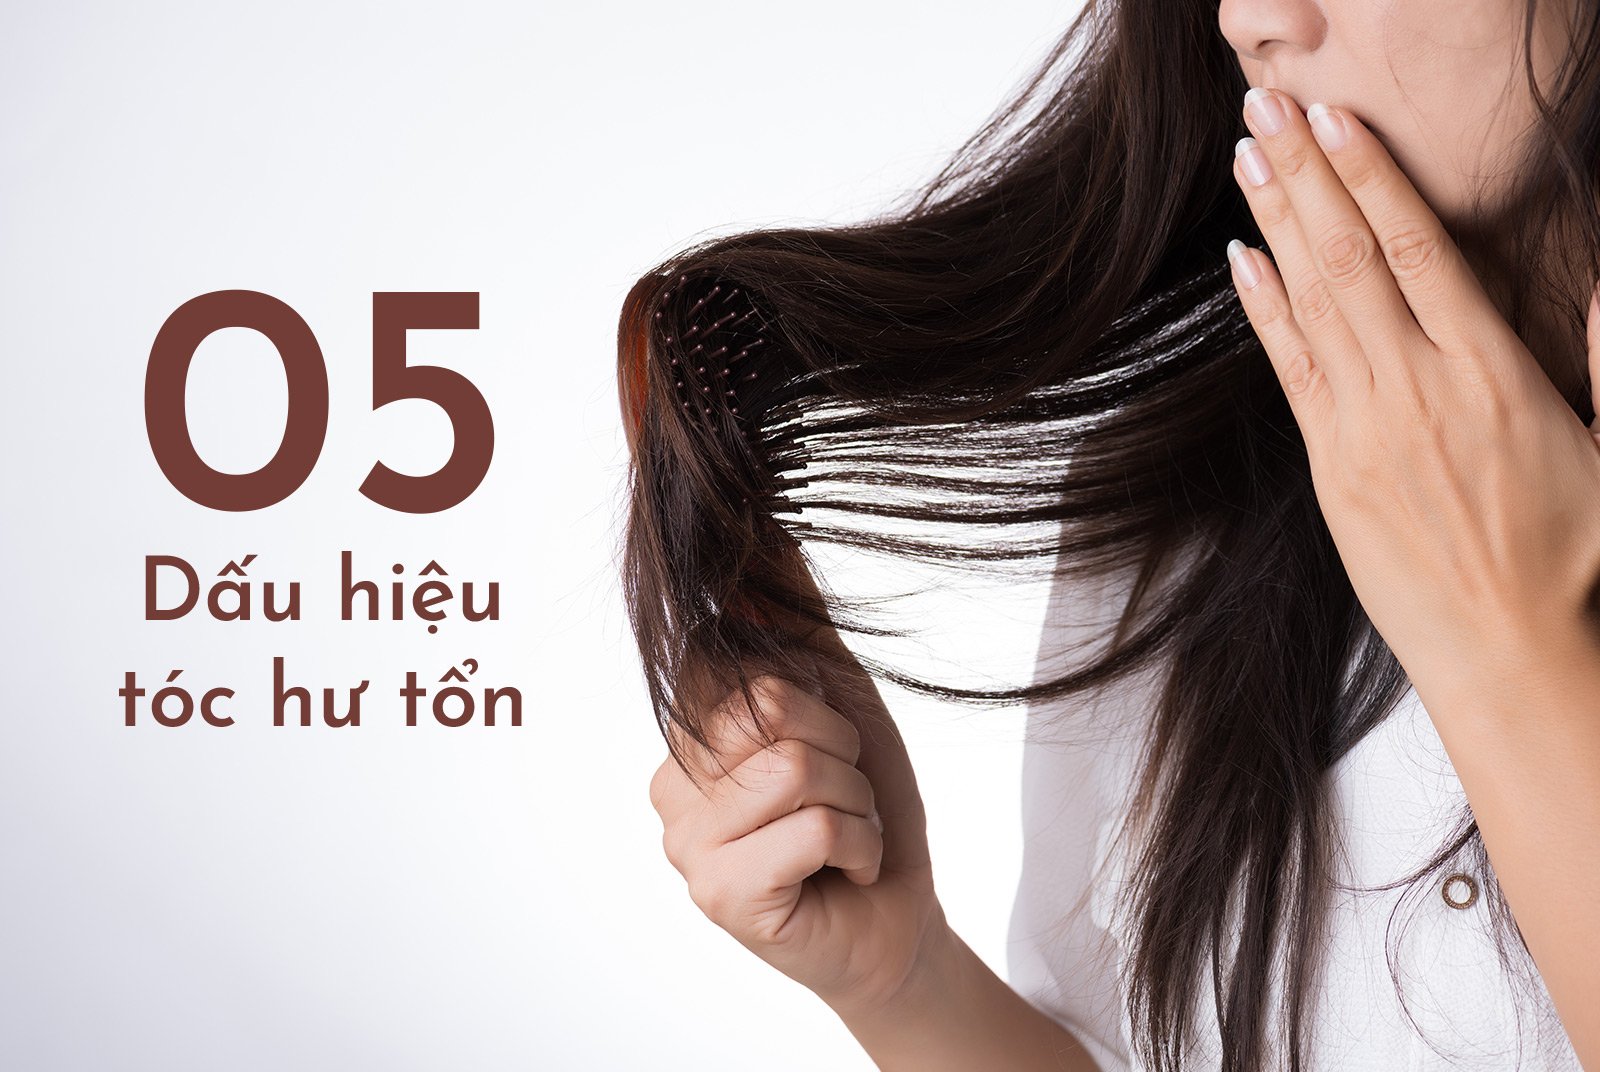 5 Dấu hiệu tóc hư tổn bạn cần phục hồi ngay